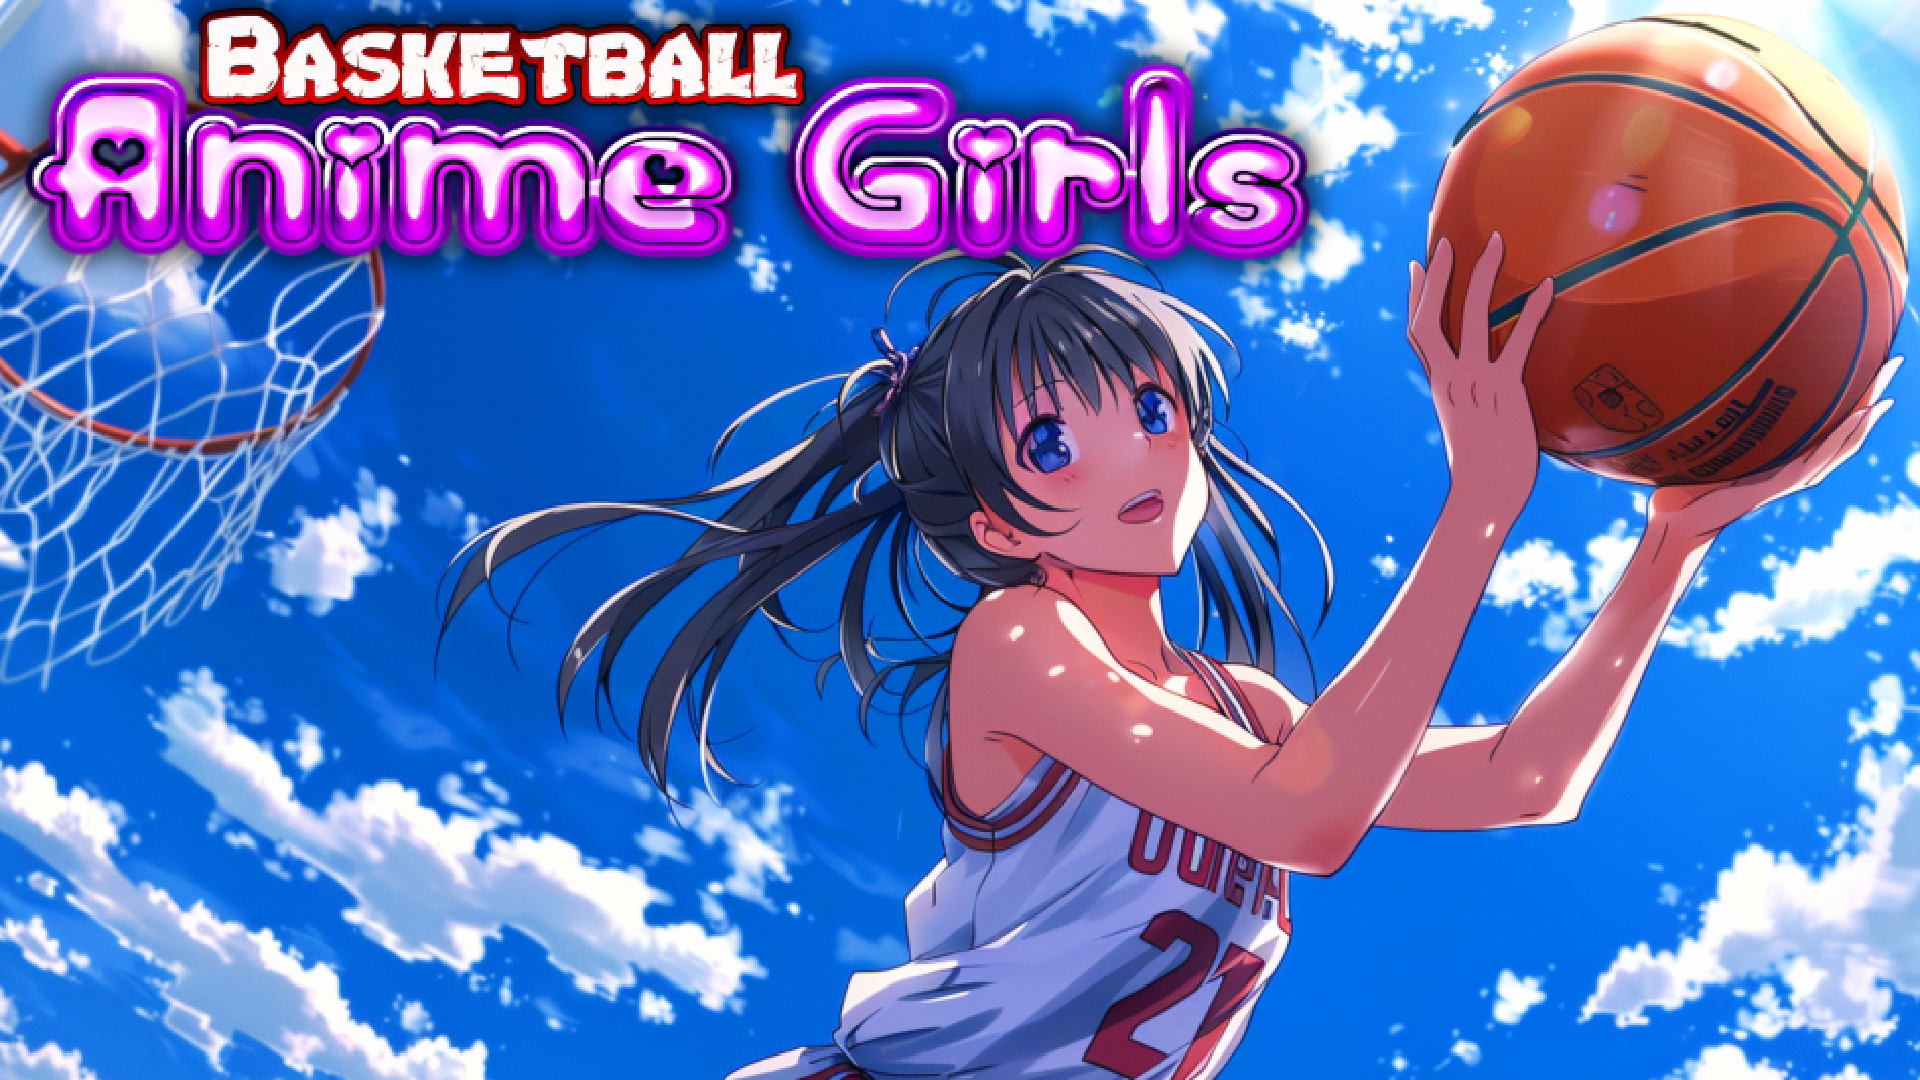 Basketball Anime Girls 1